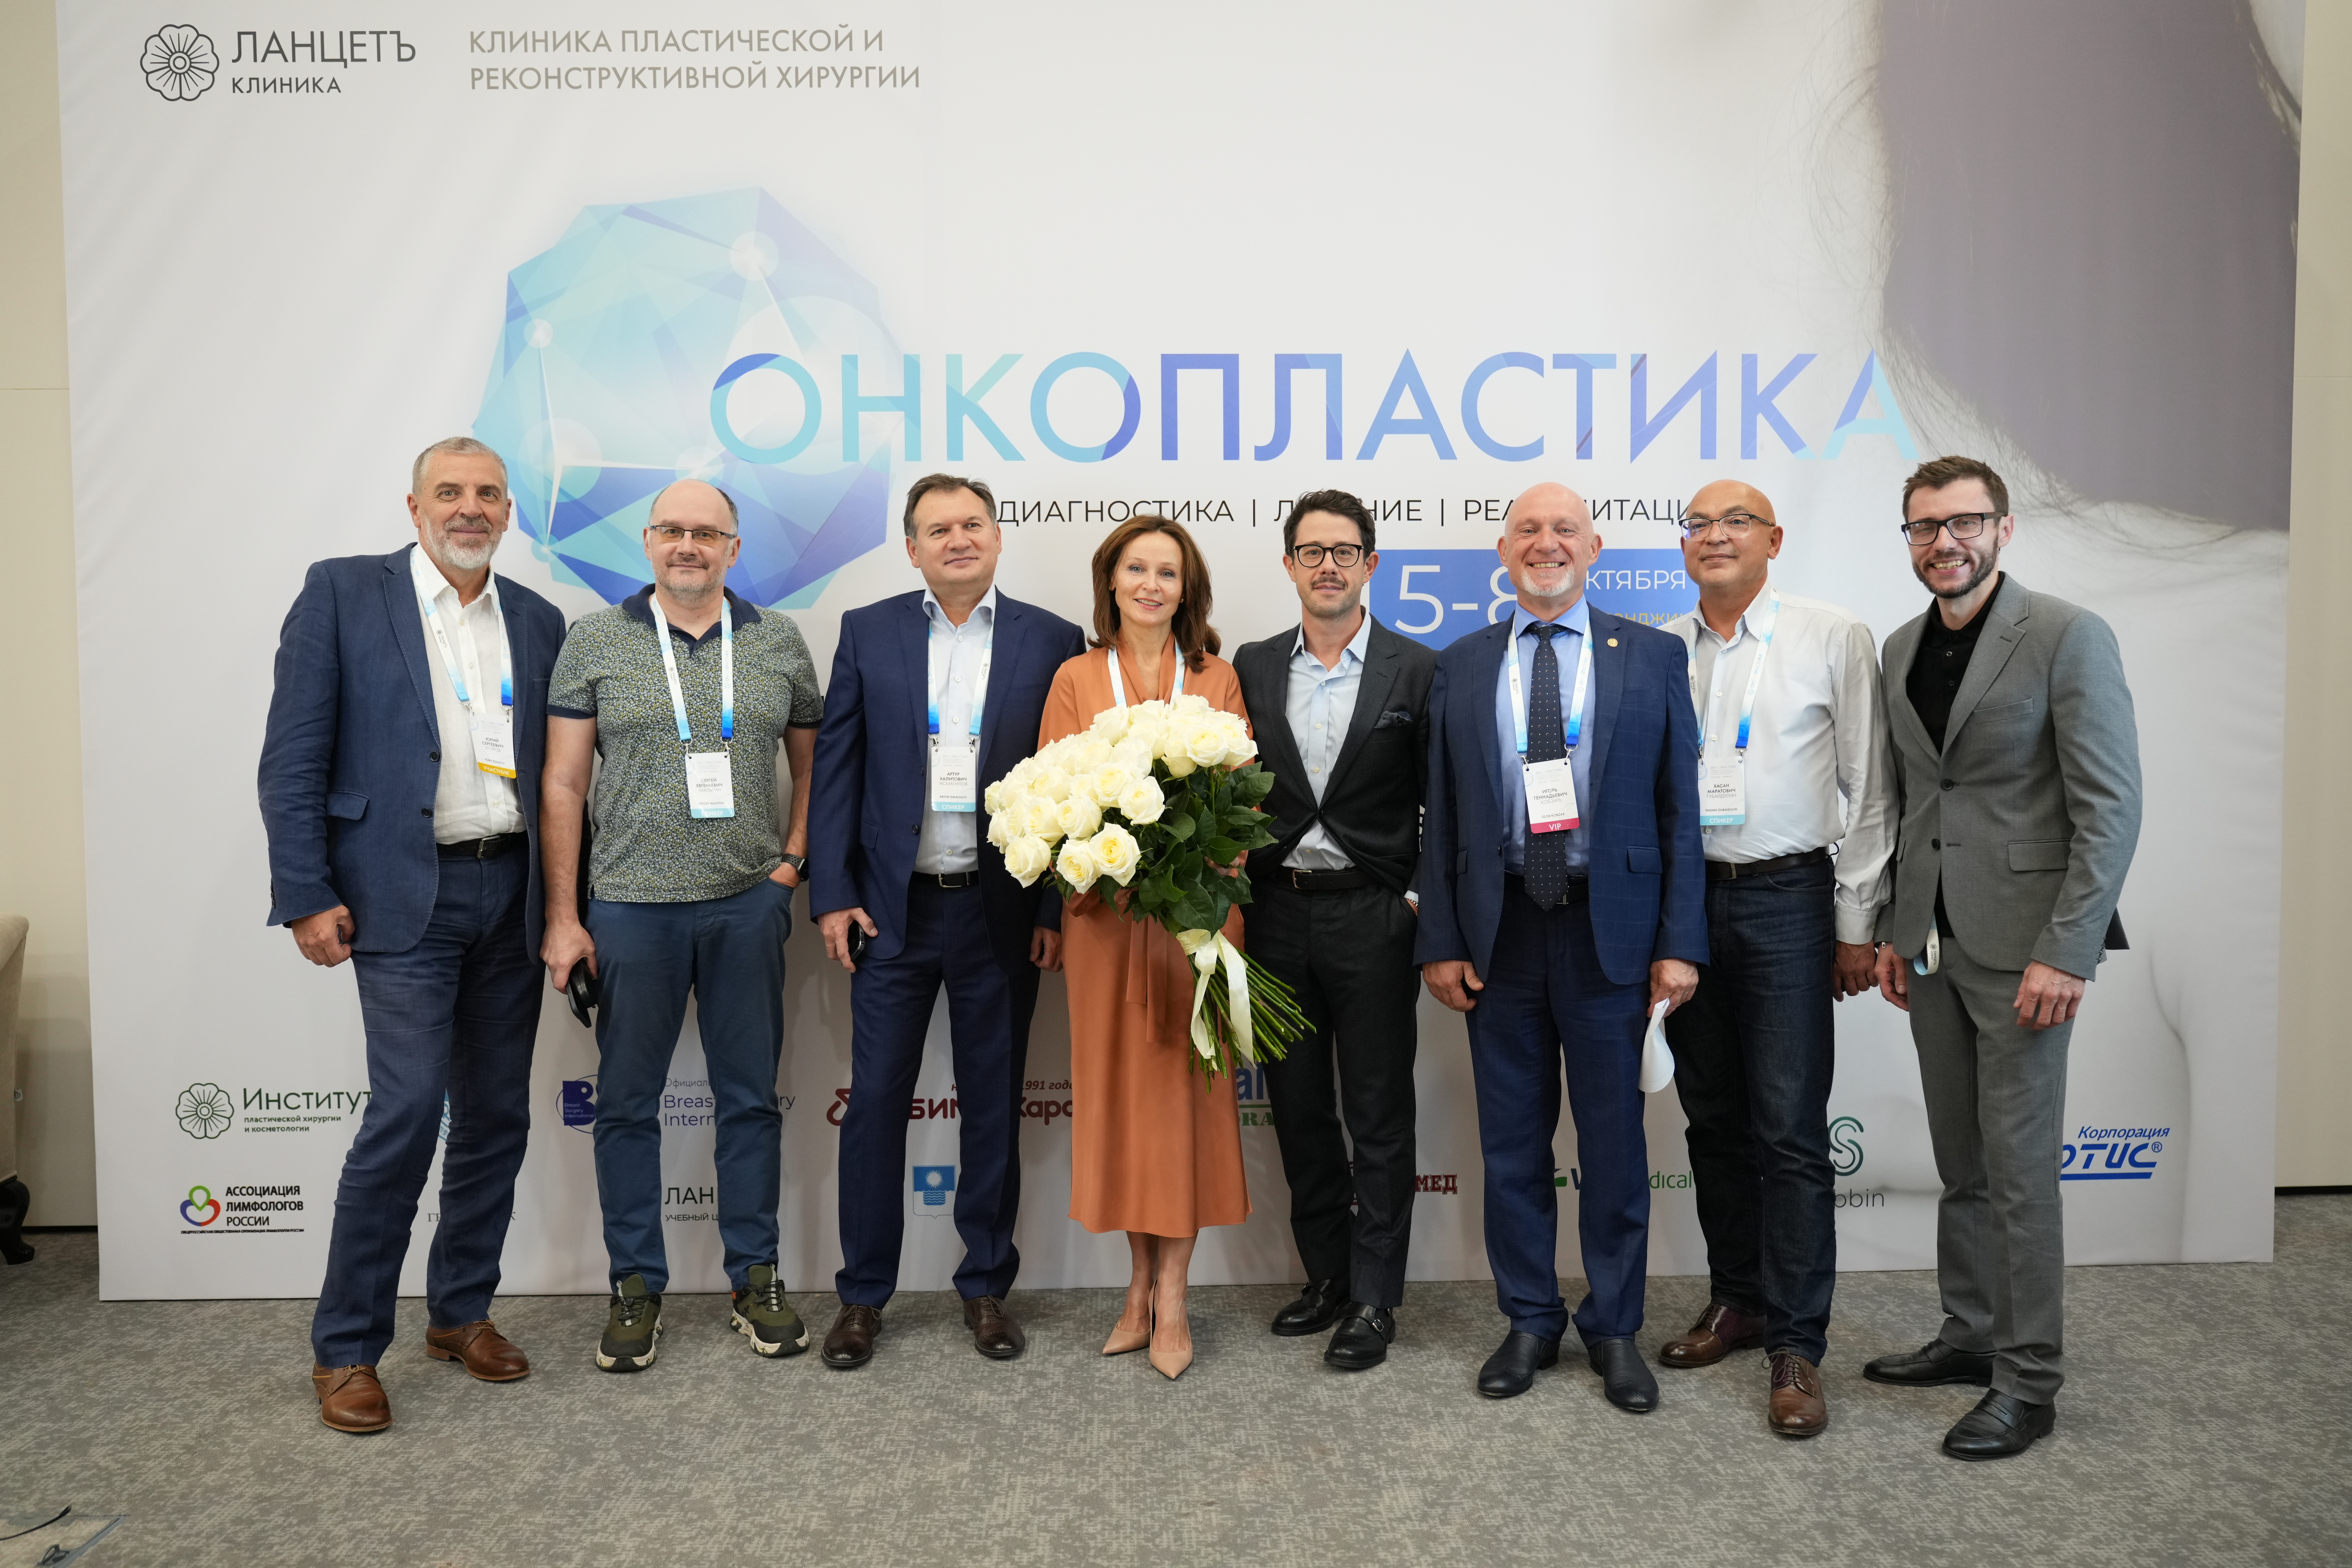 II Черноморская конференция по междисциплинарному подходу в хирургии молочной железы